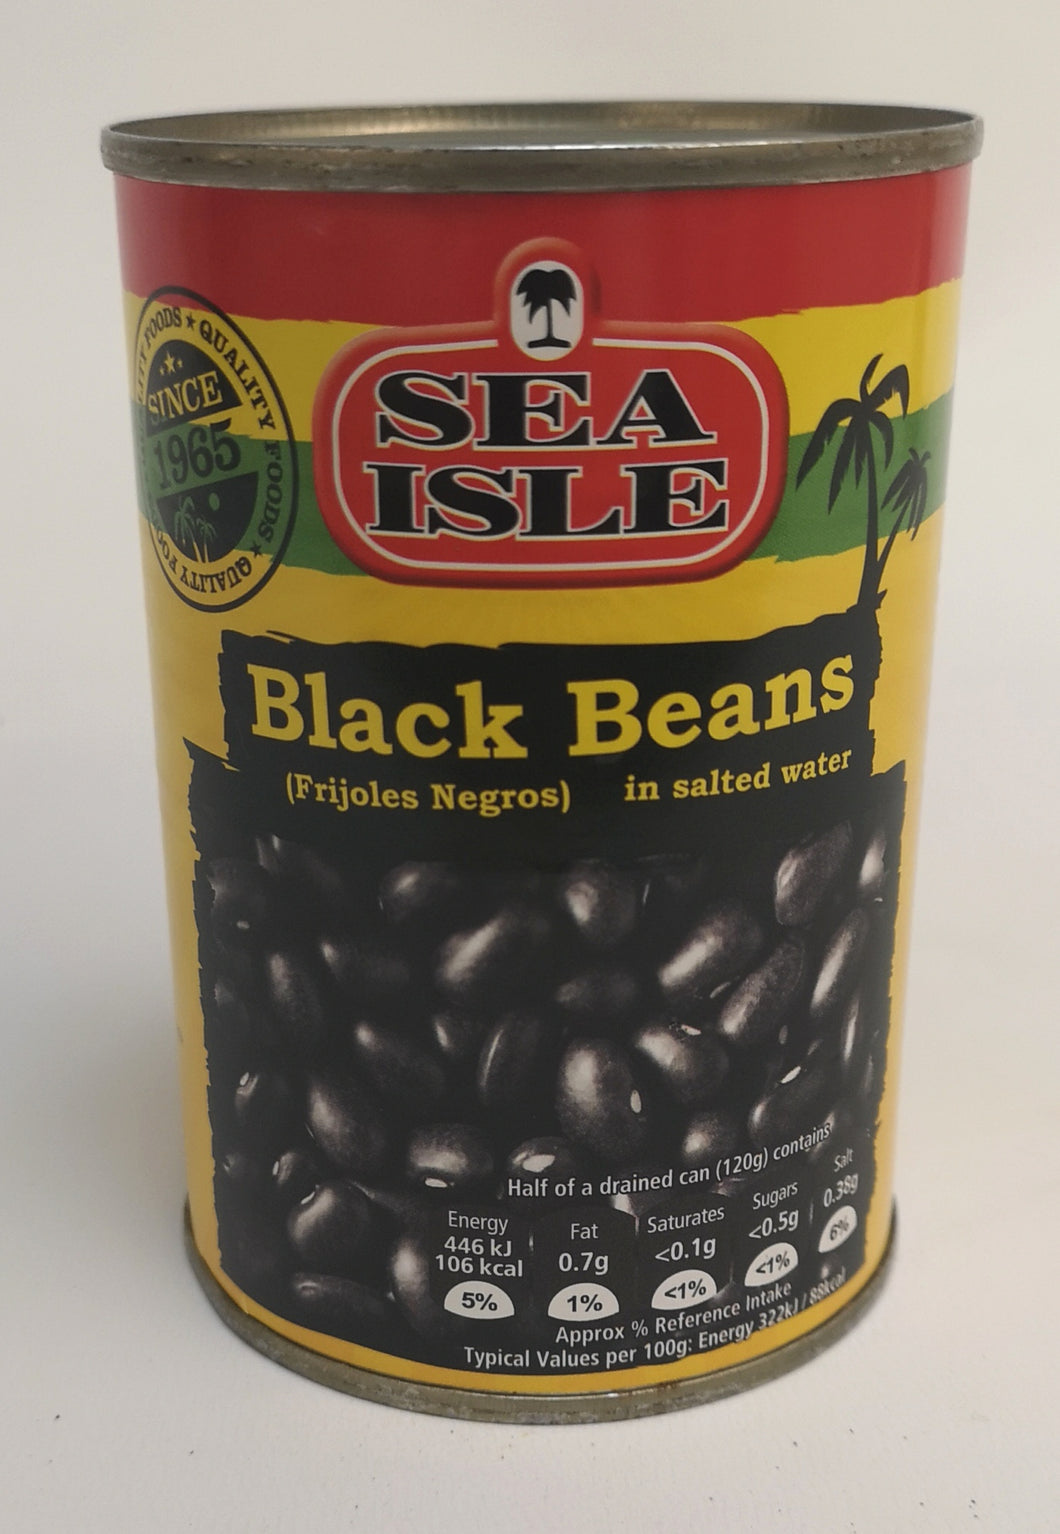 Sea Isle Black Beans in Salted Water